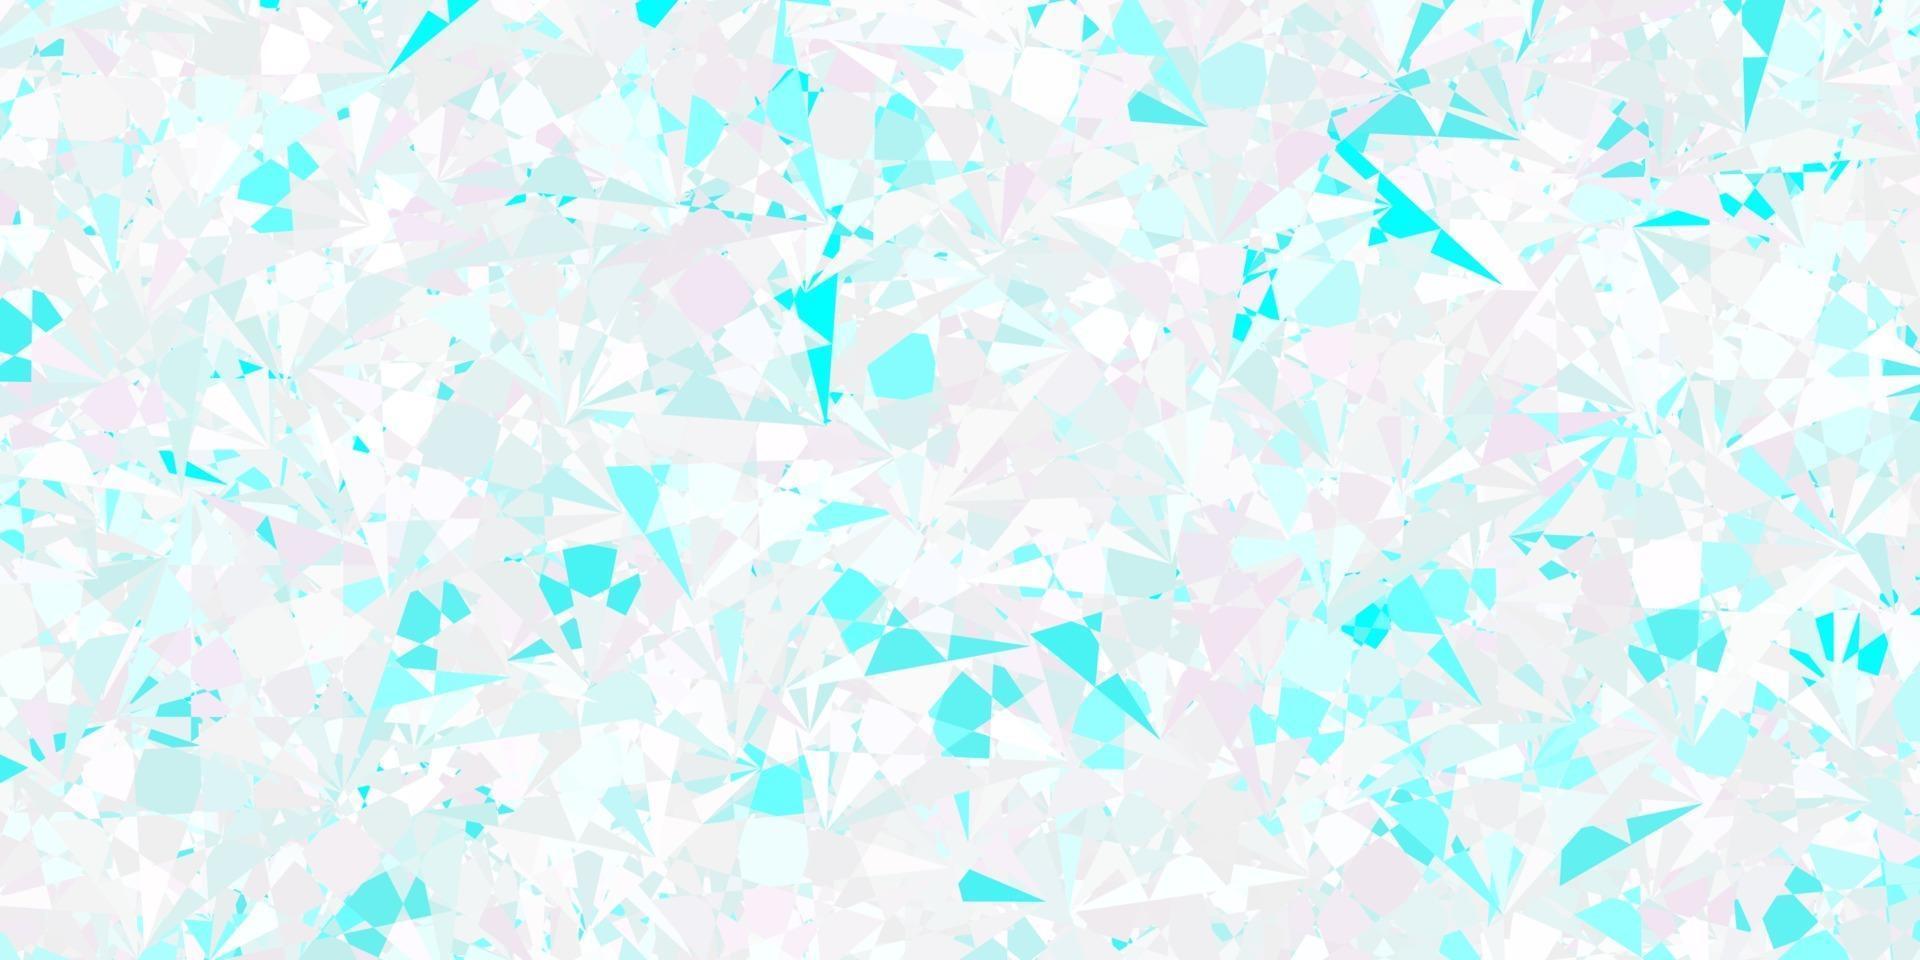 fond de vecteur rose clair, bleu avec des formes polygonales.